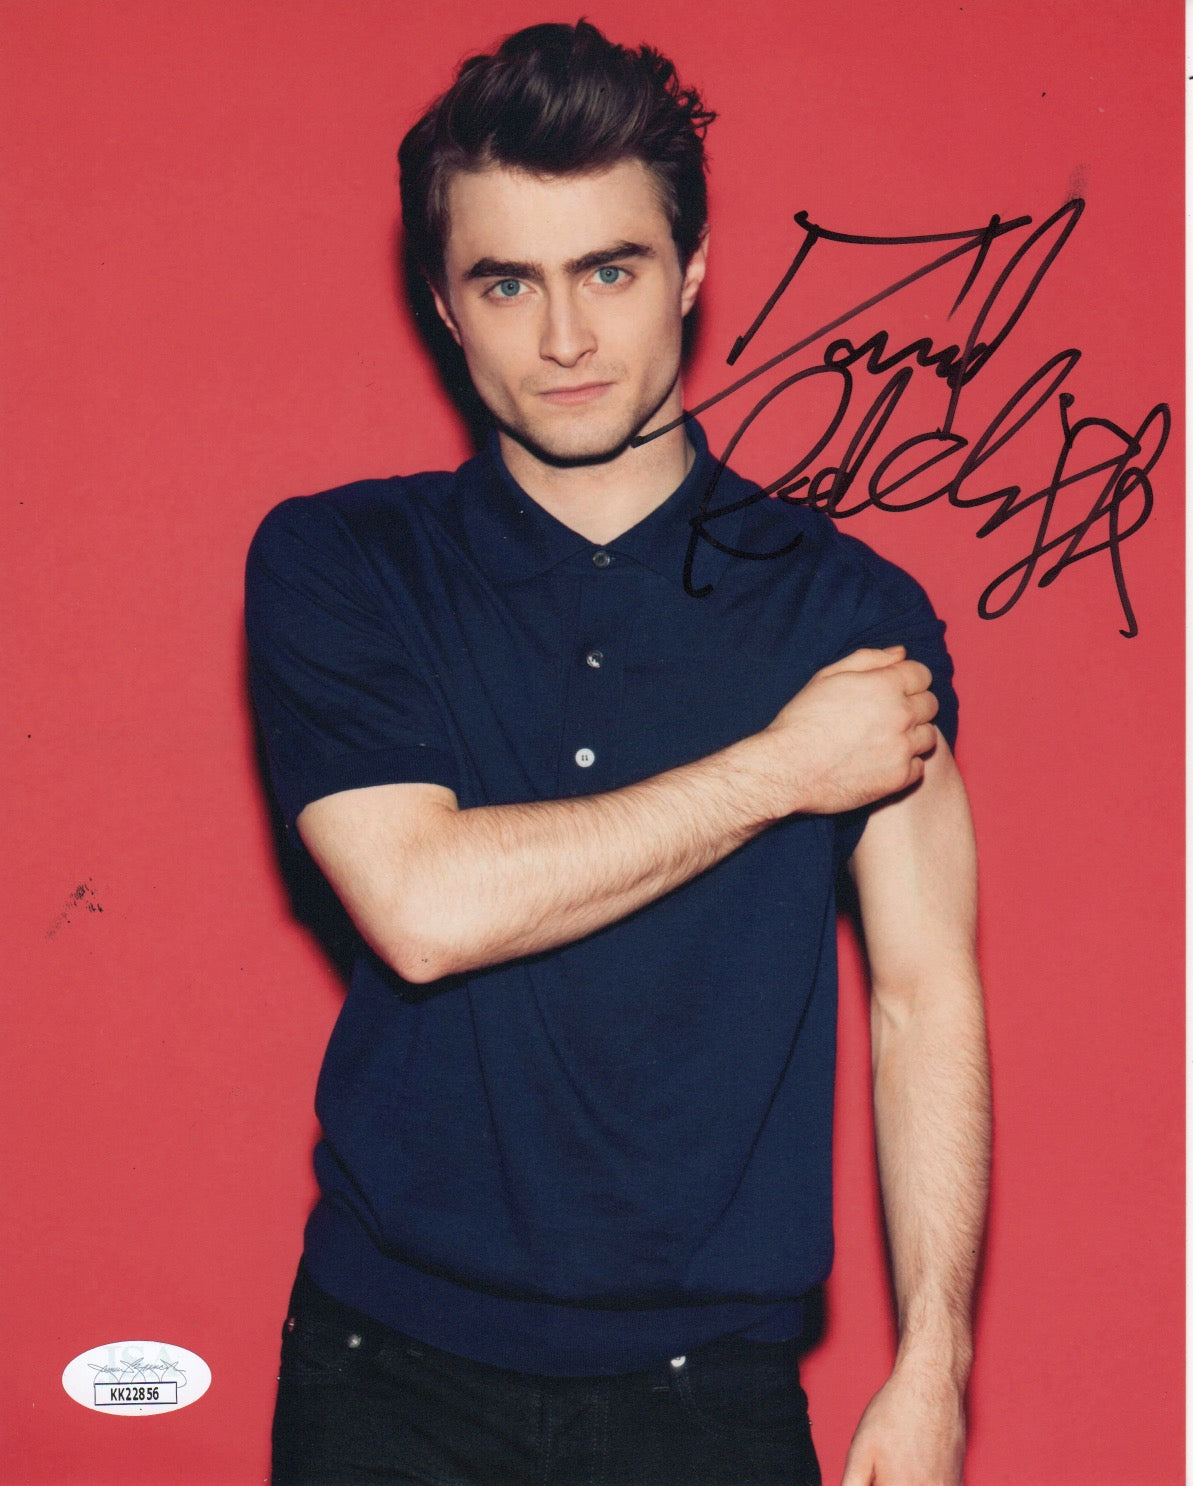 Daniel Radcliffe Harry Potter Signed Autograph 8x10 JSA Authentic Photo #3 - Outlaw Hobbies Authentic Autographs